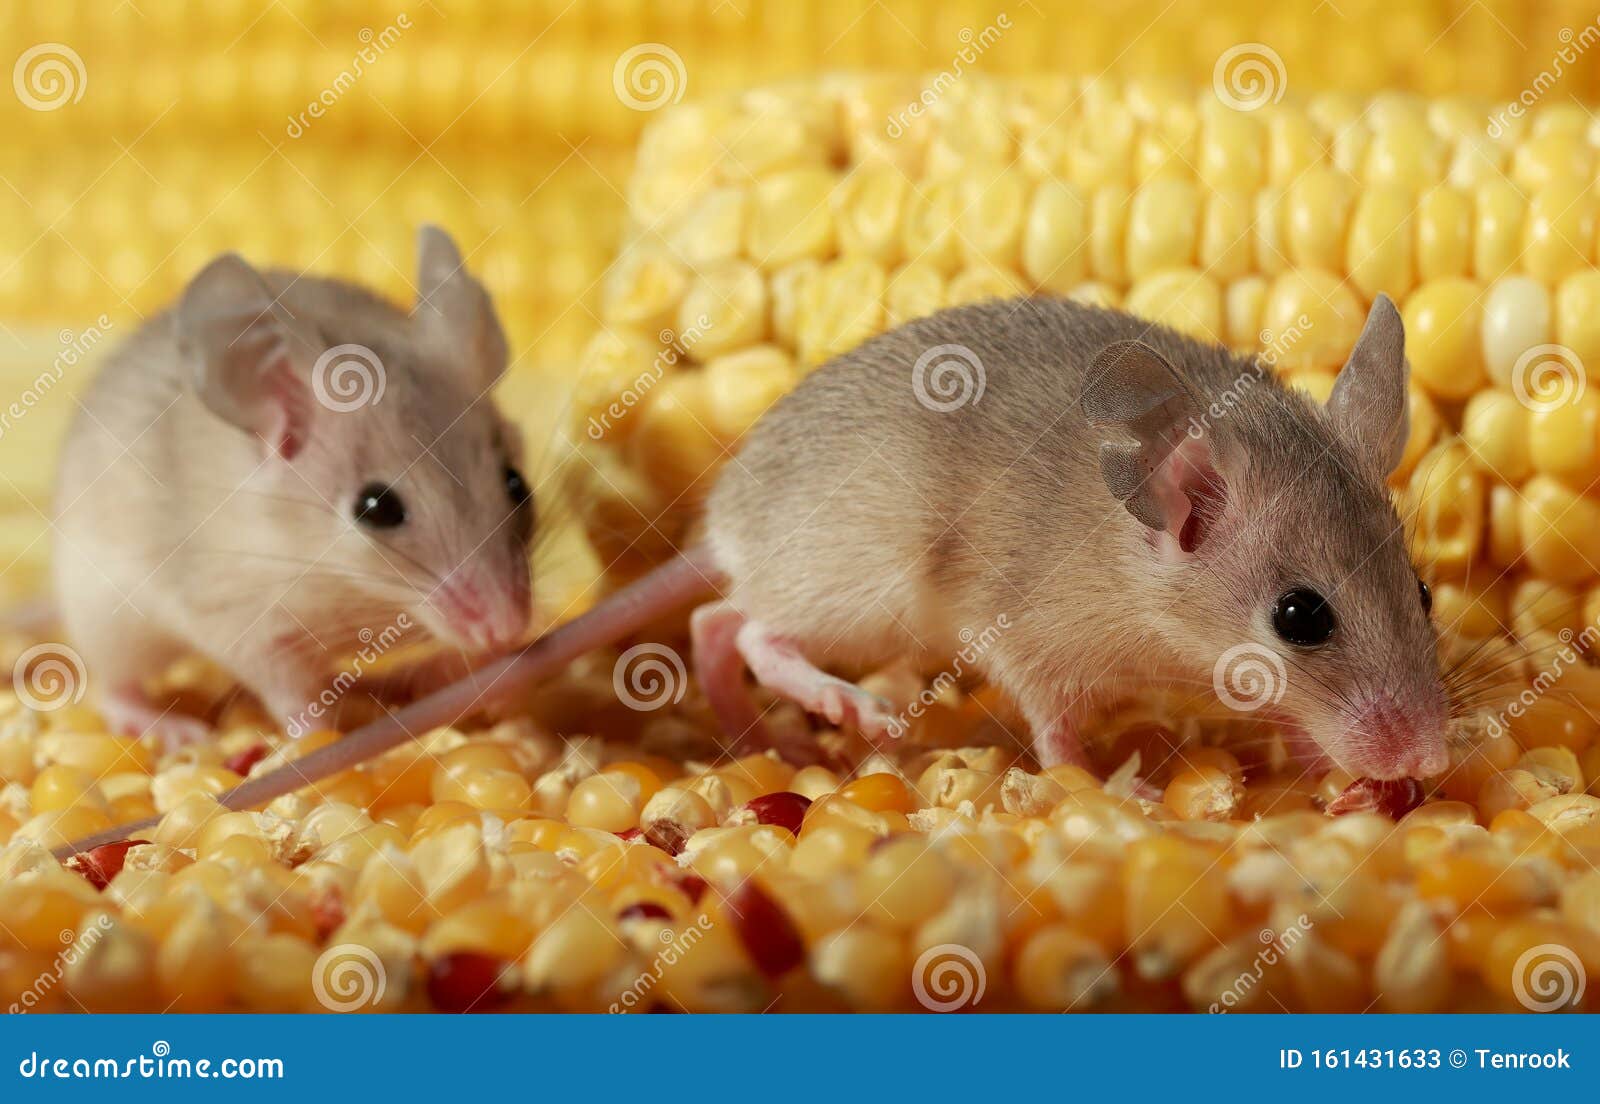 Mice Control in Barn